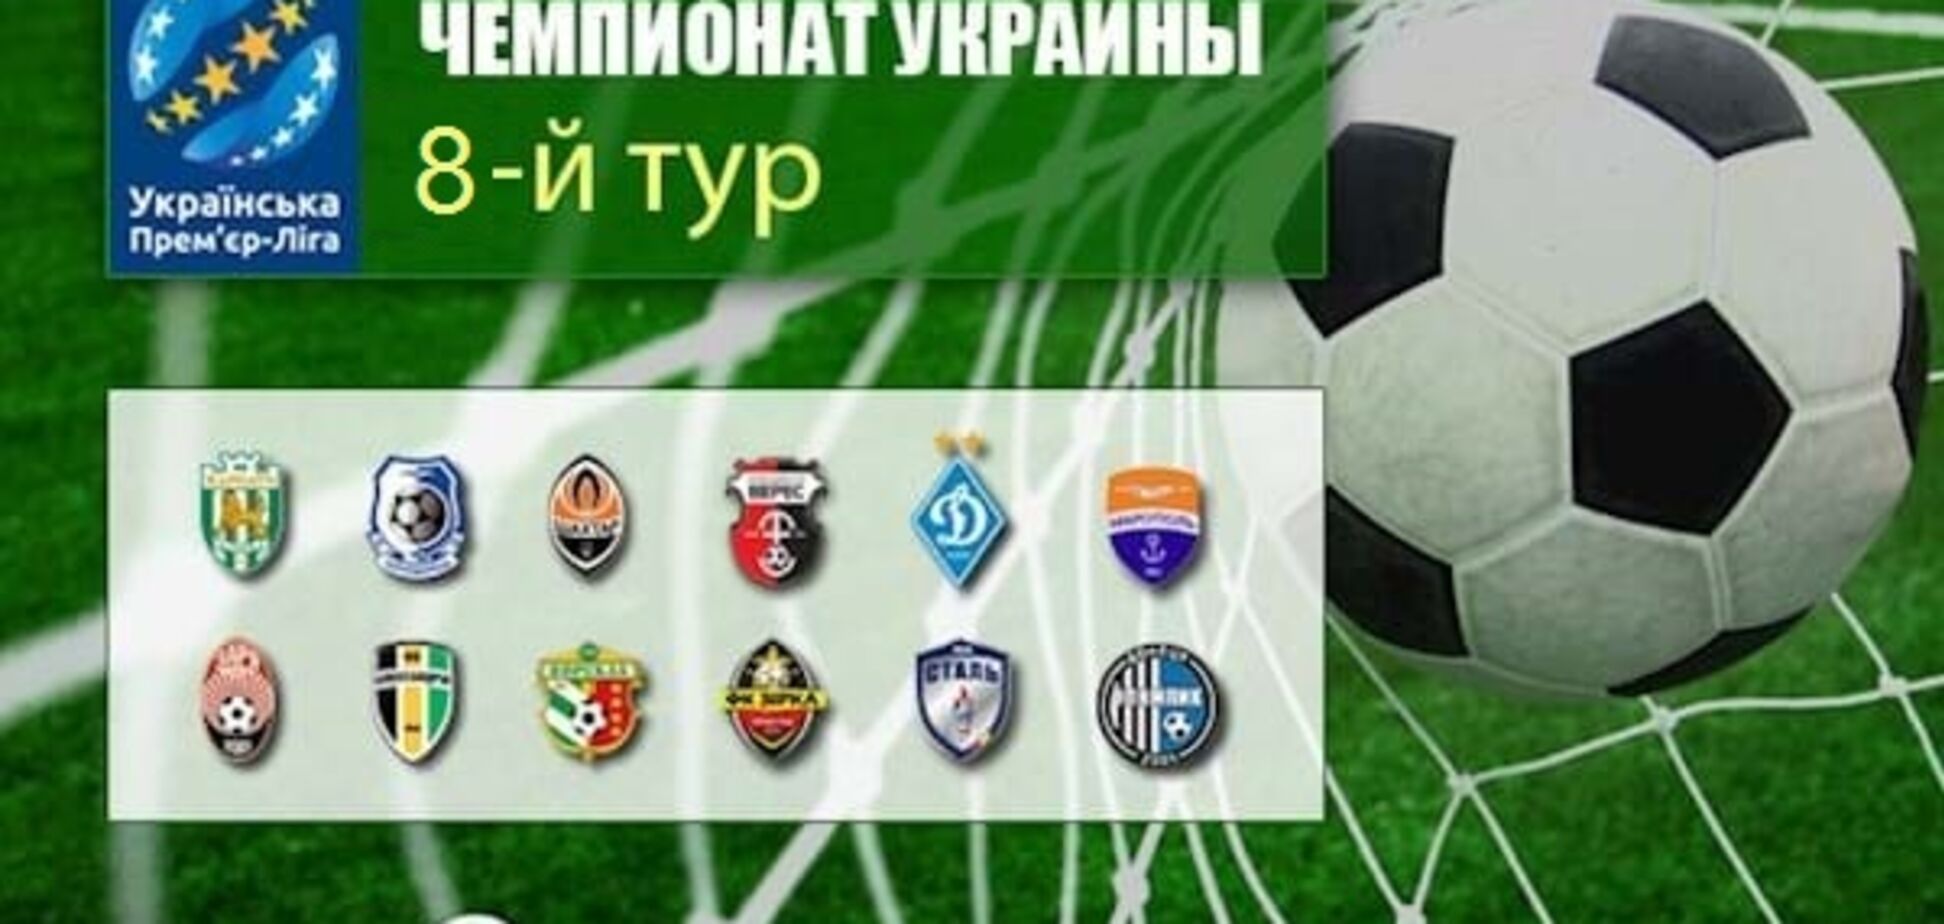 8-й тур чемпионата Украины по футболу: результаты, обзоры, таблица